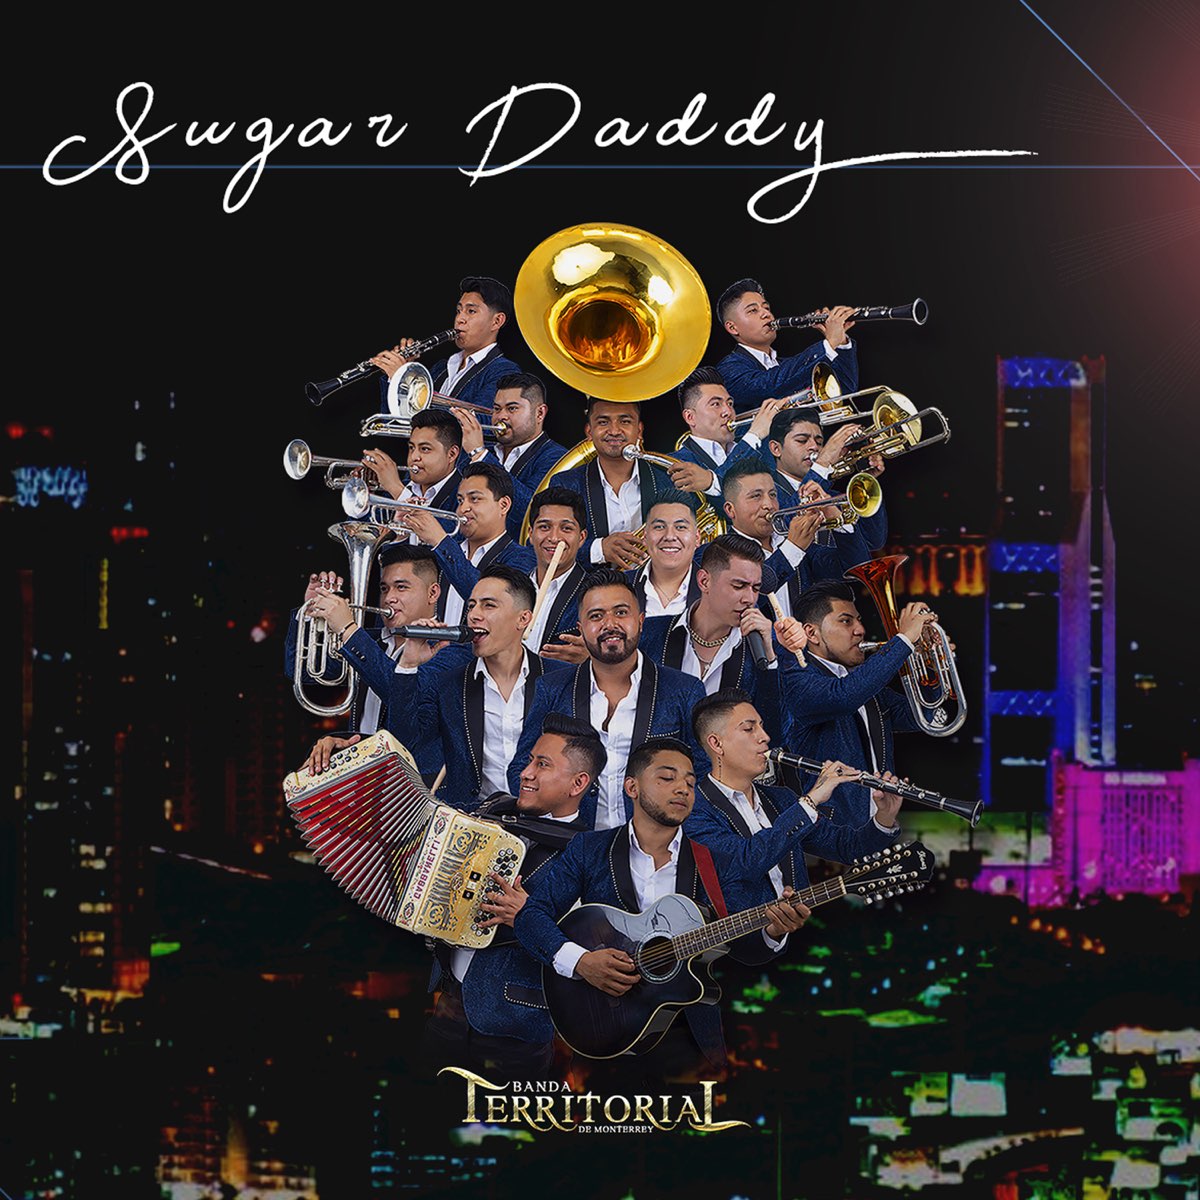 La Banda Territorial de Monterrey promociona “Sugar Daddy”, su nuevo sencillo